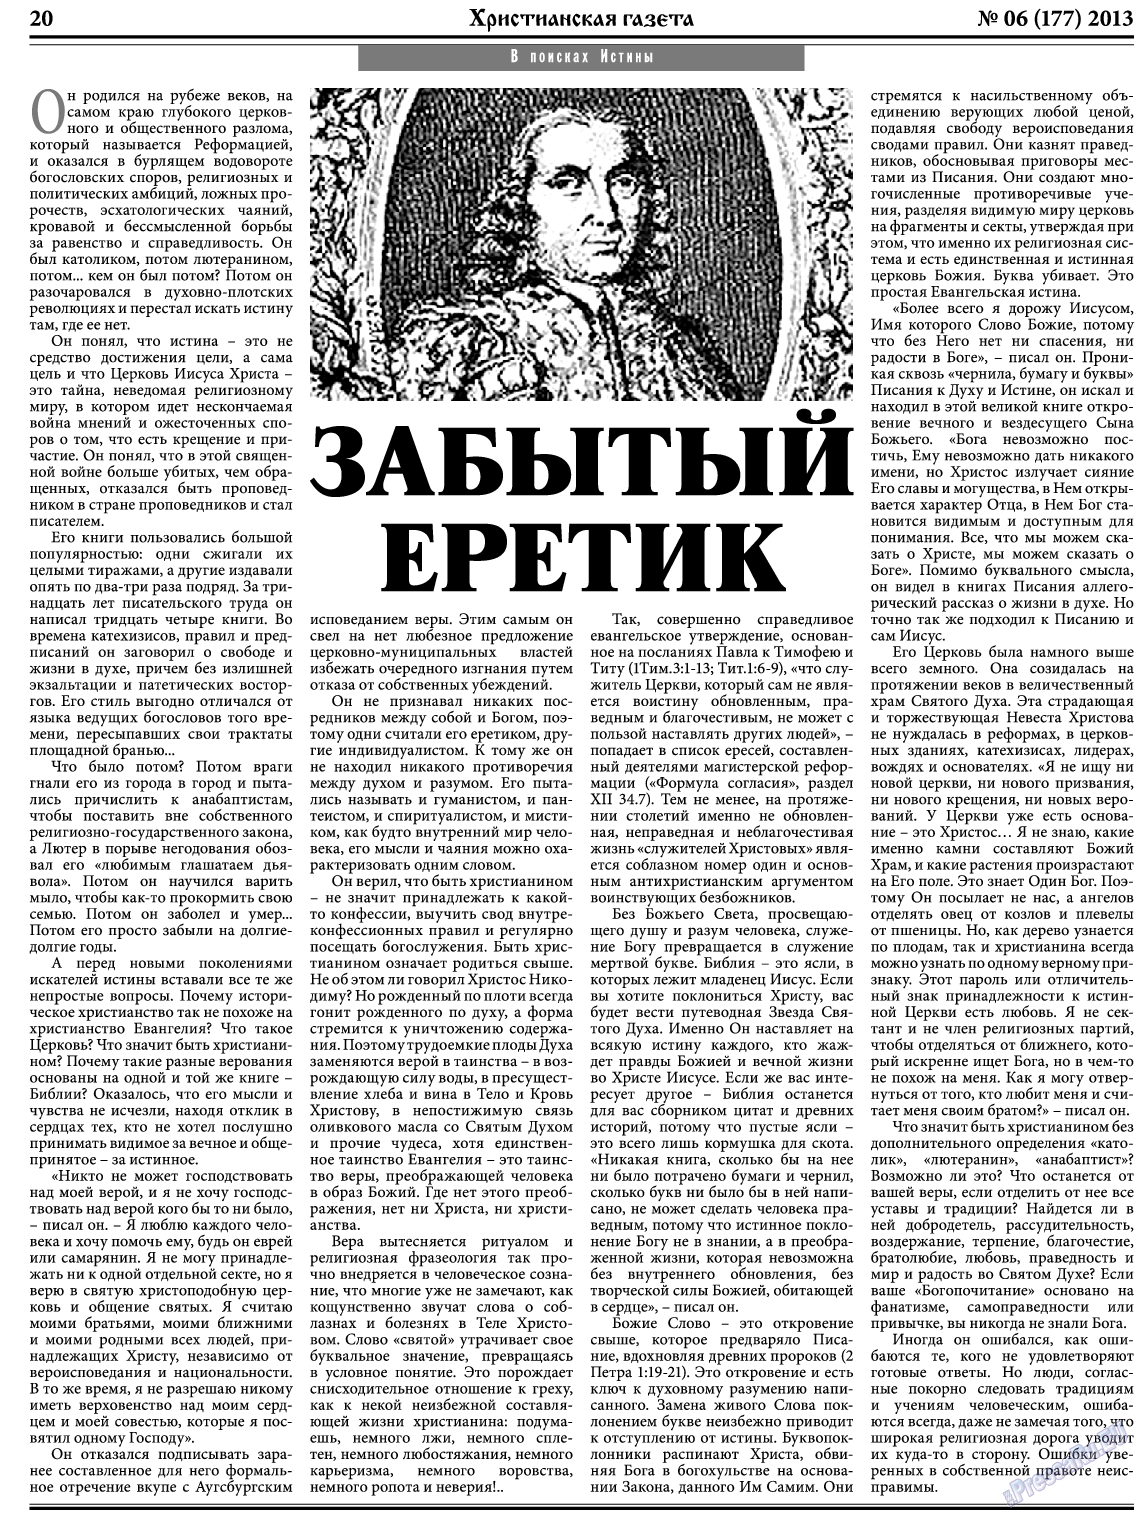 Христианская газета, газета. 2013 №6 стр.28